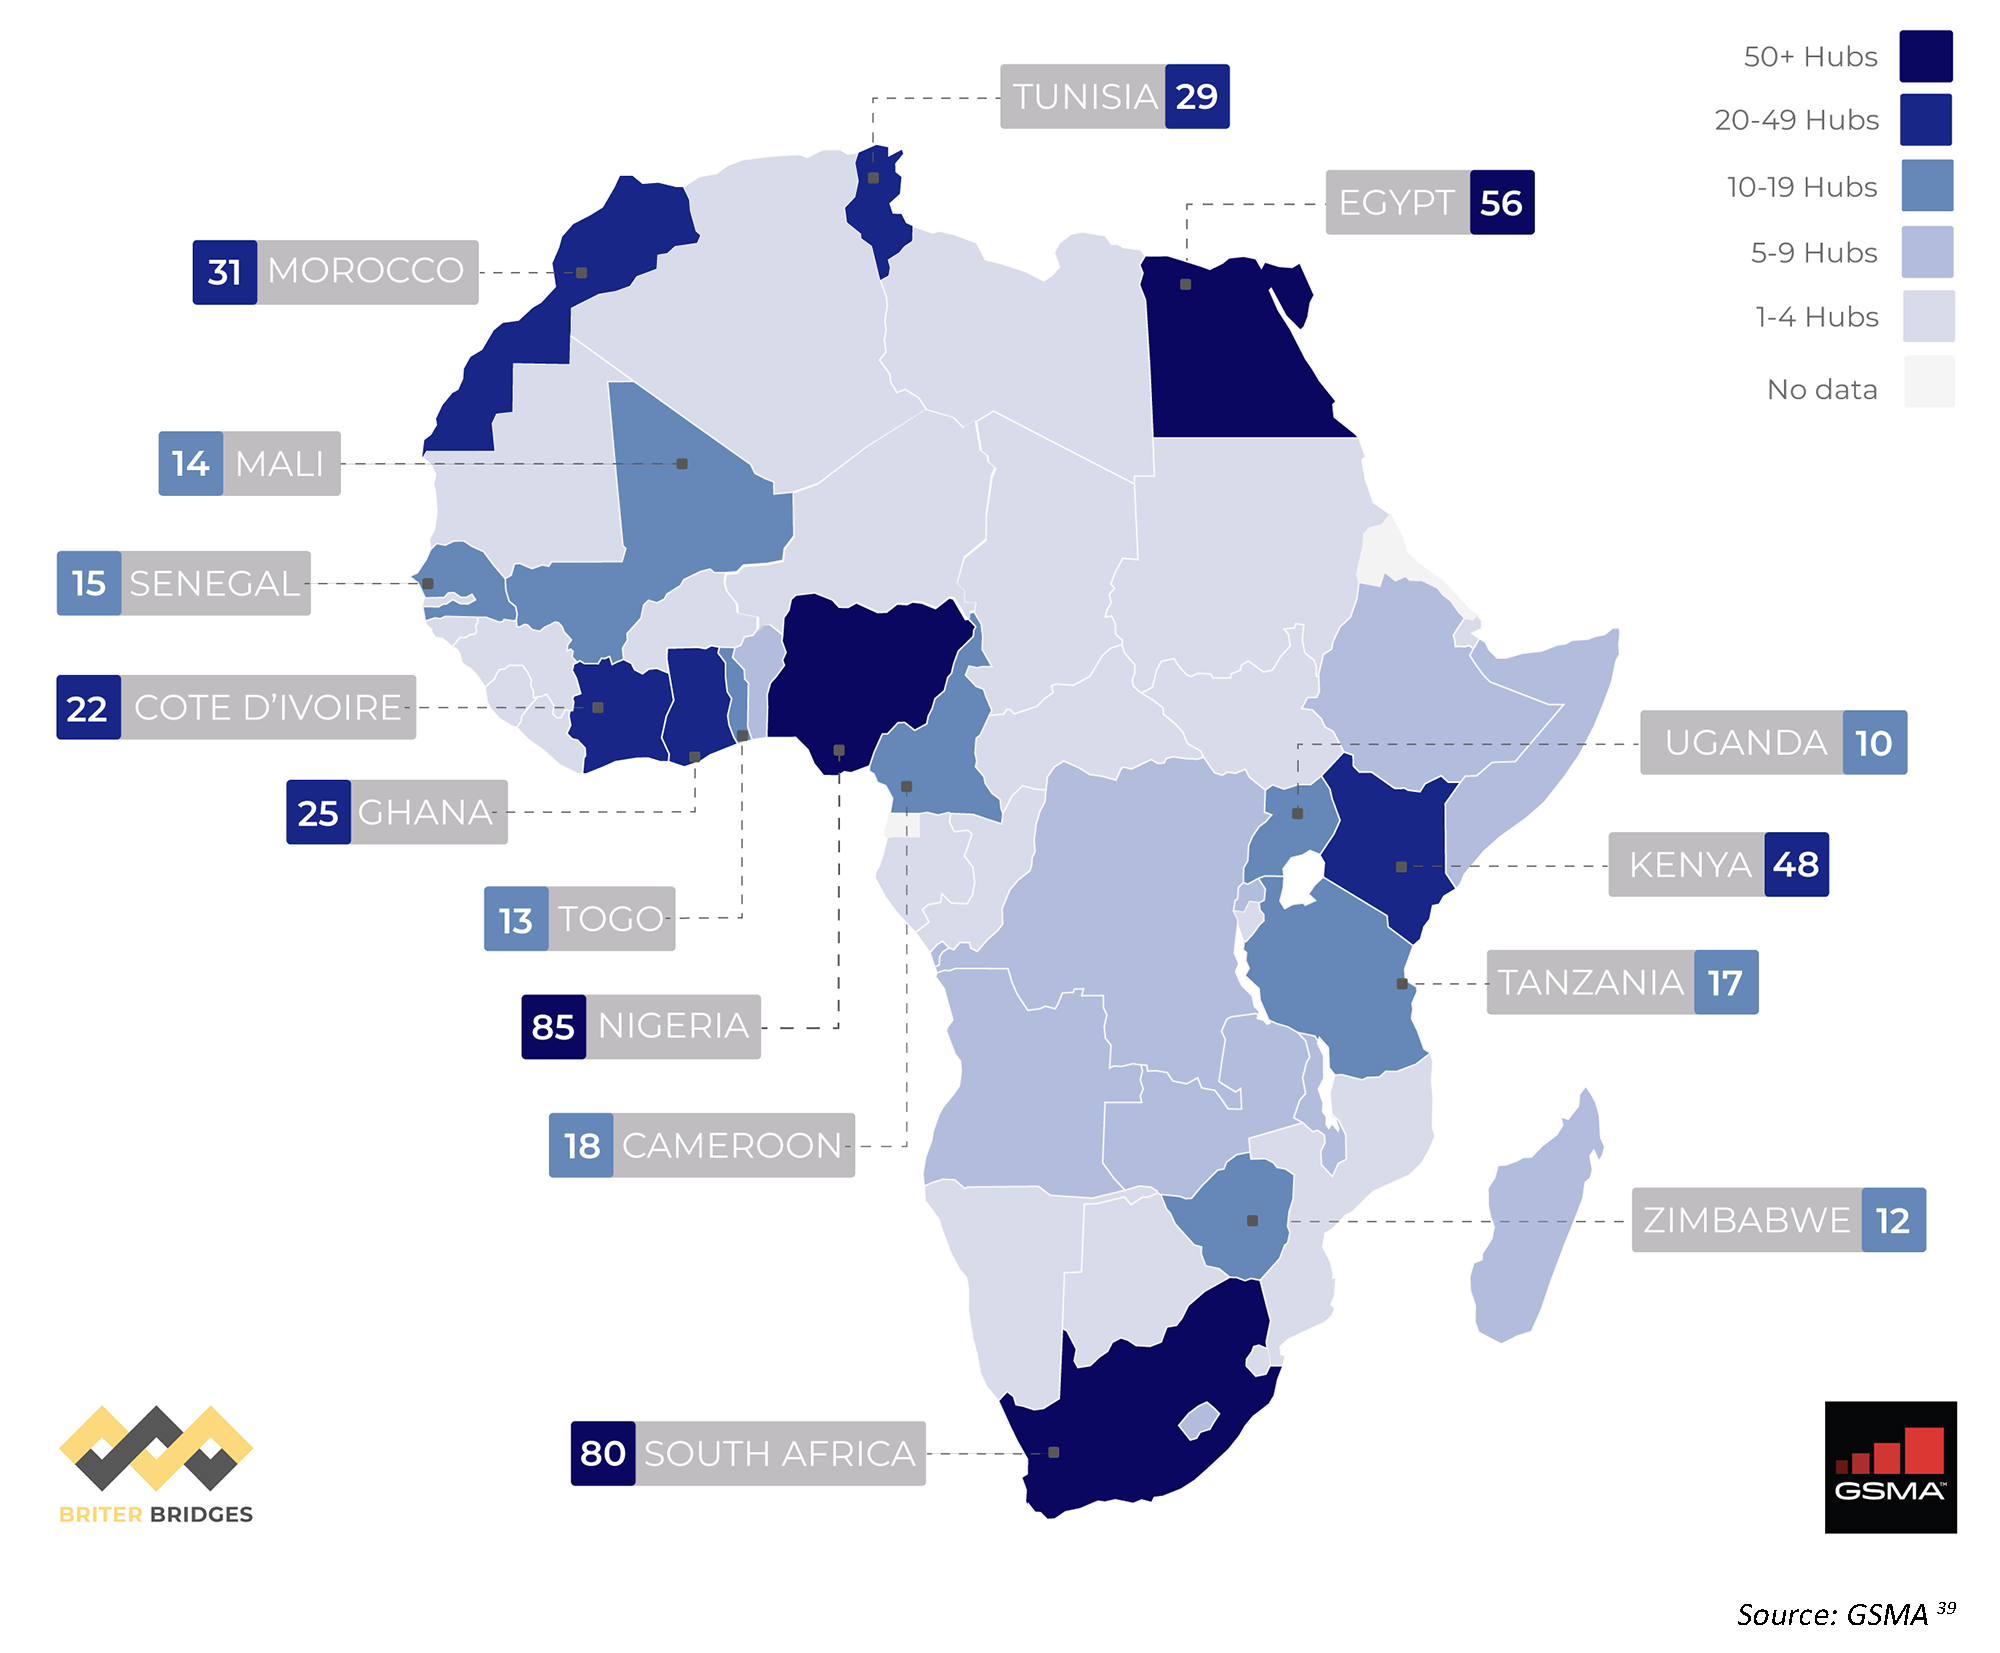 Africa's tech hubs